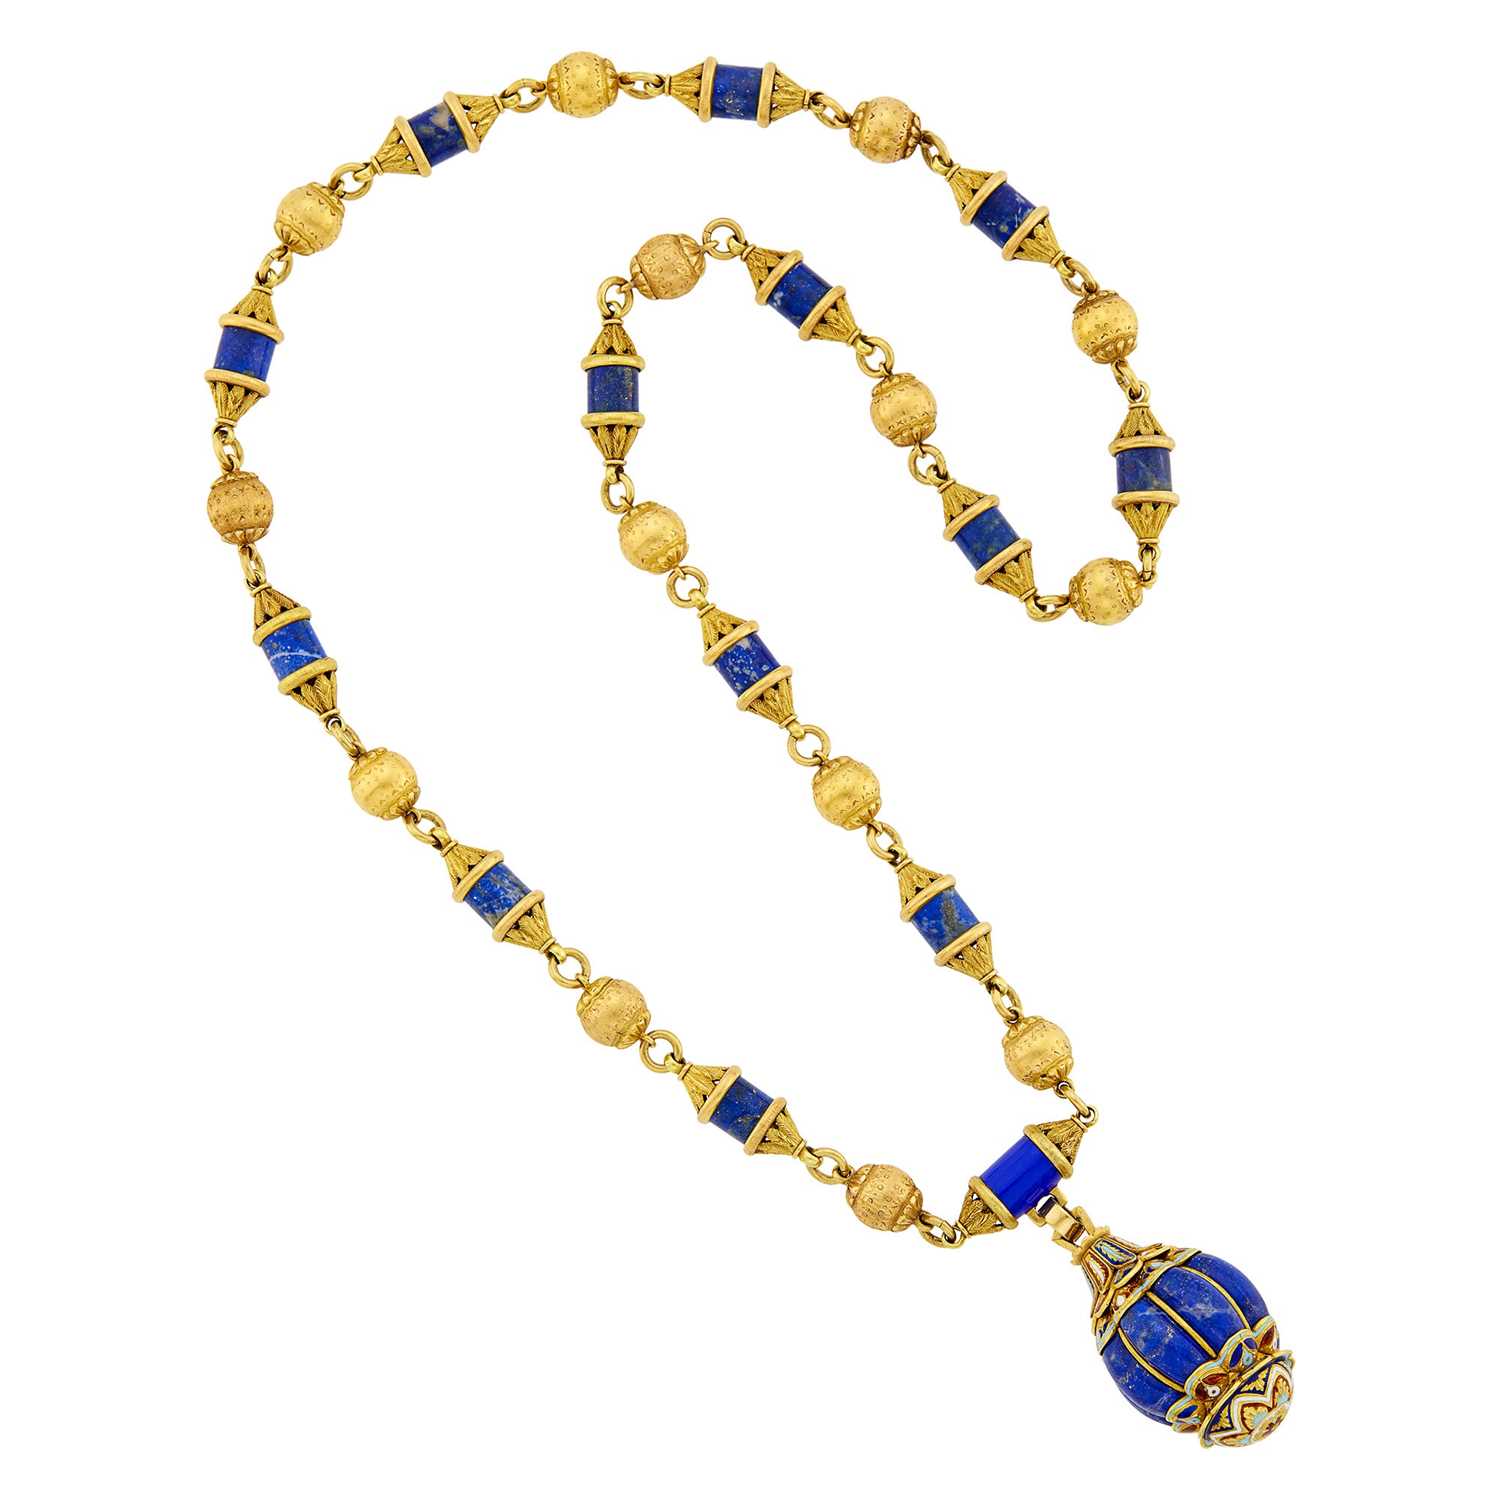 Lot 42 - Gold, Lapis and Enamel Pendant-Necklace